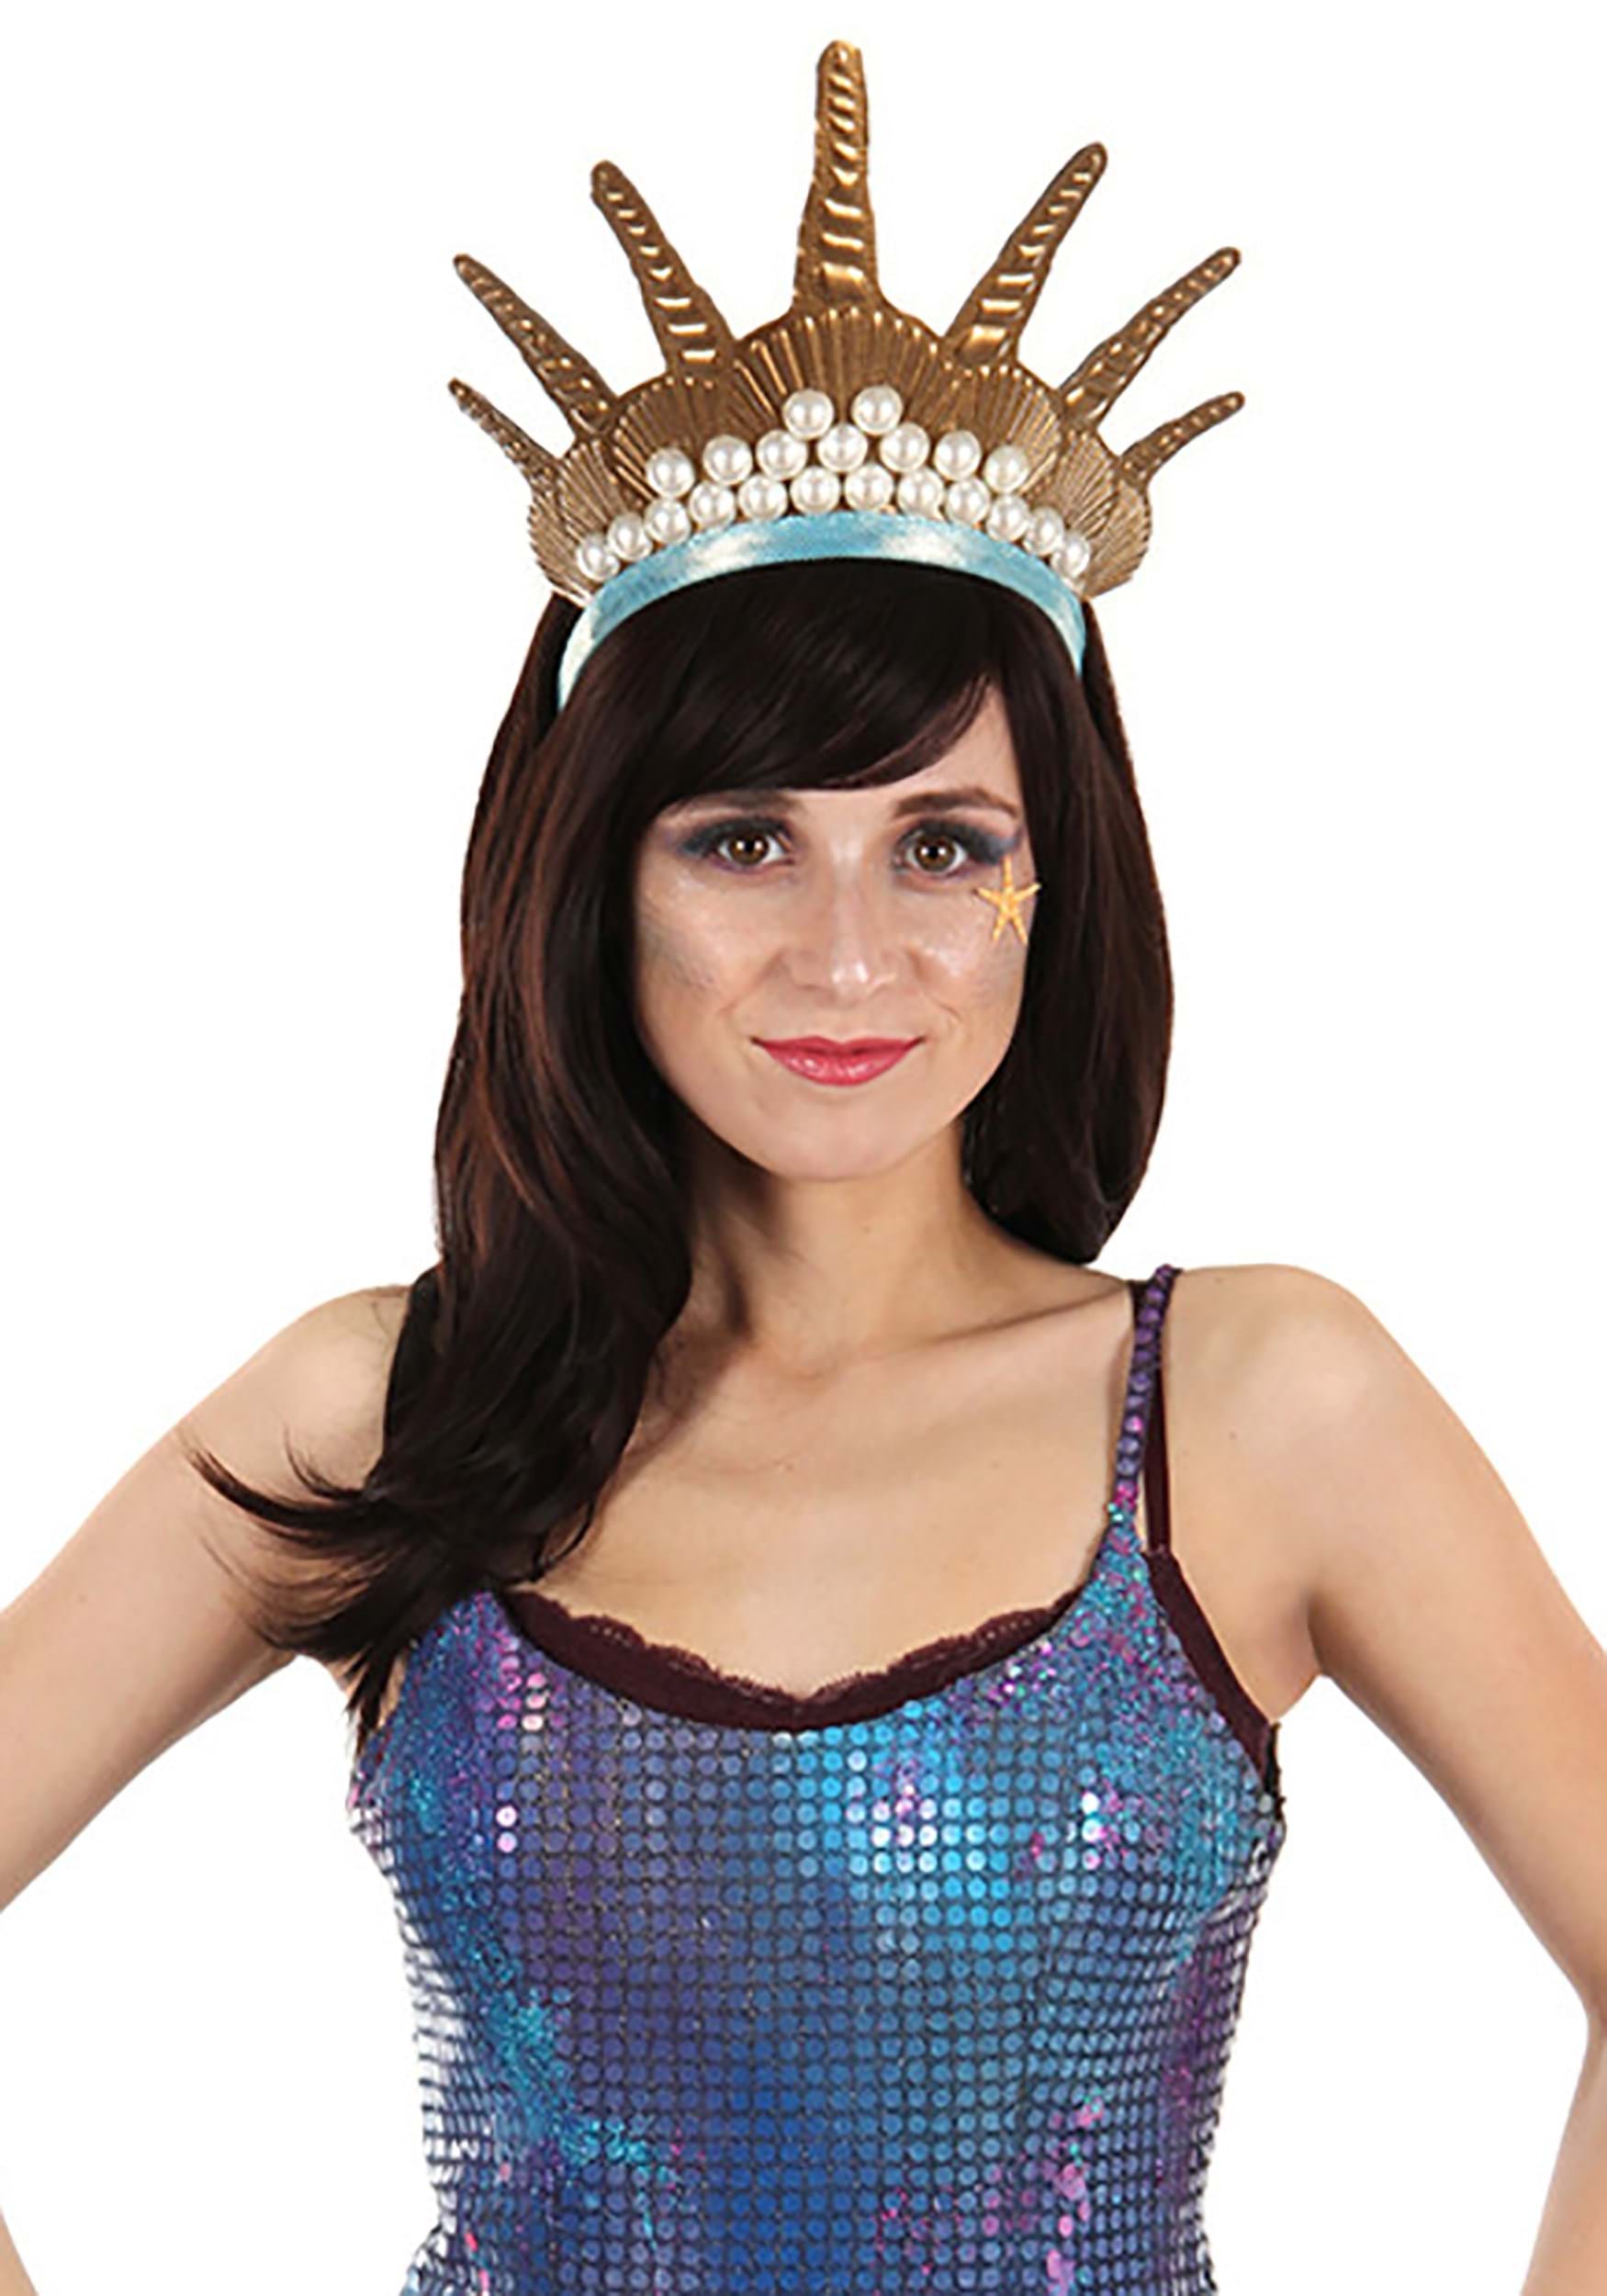 Mermaid Queen Crown Costume Headband